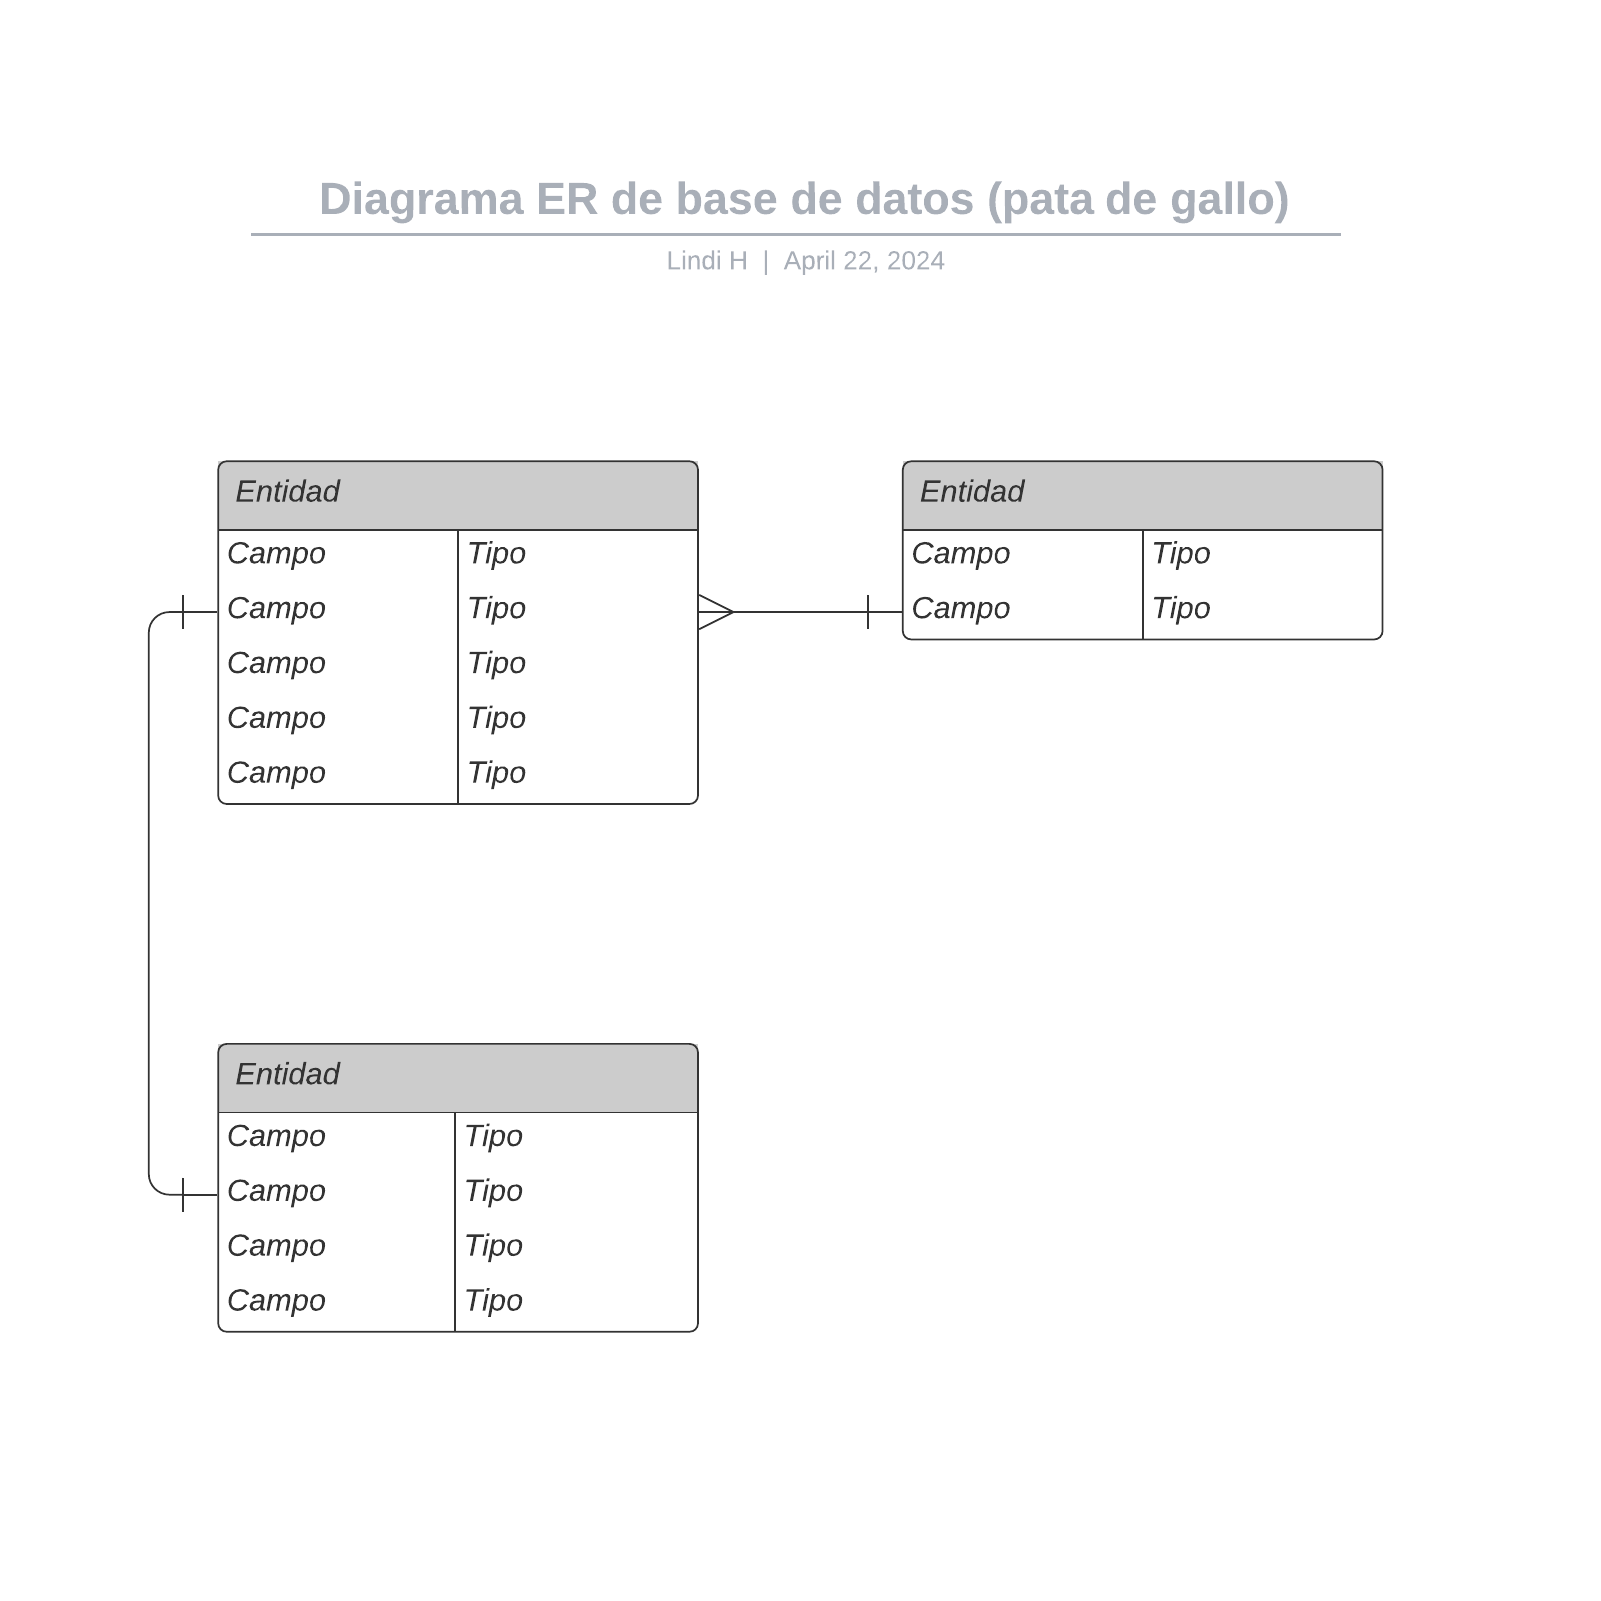 Diagrama ER de base de datos (pata de gallo) example